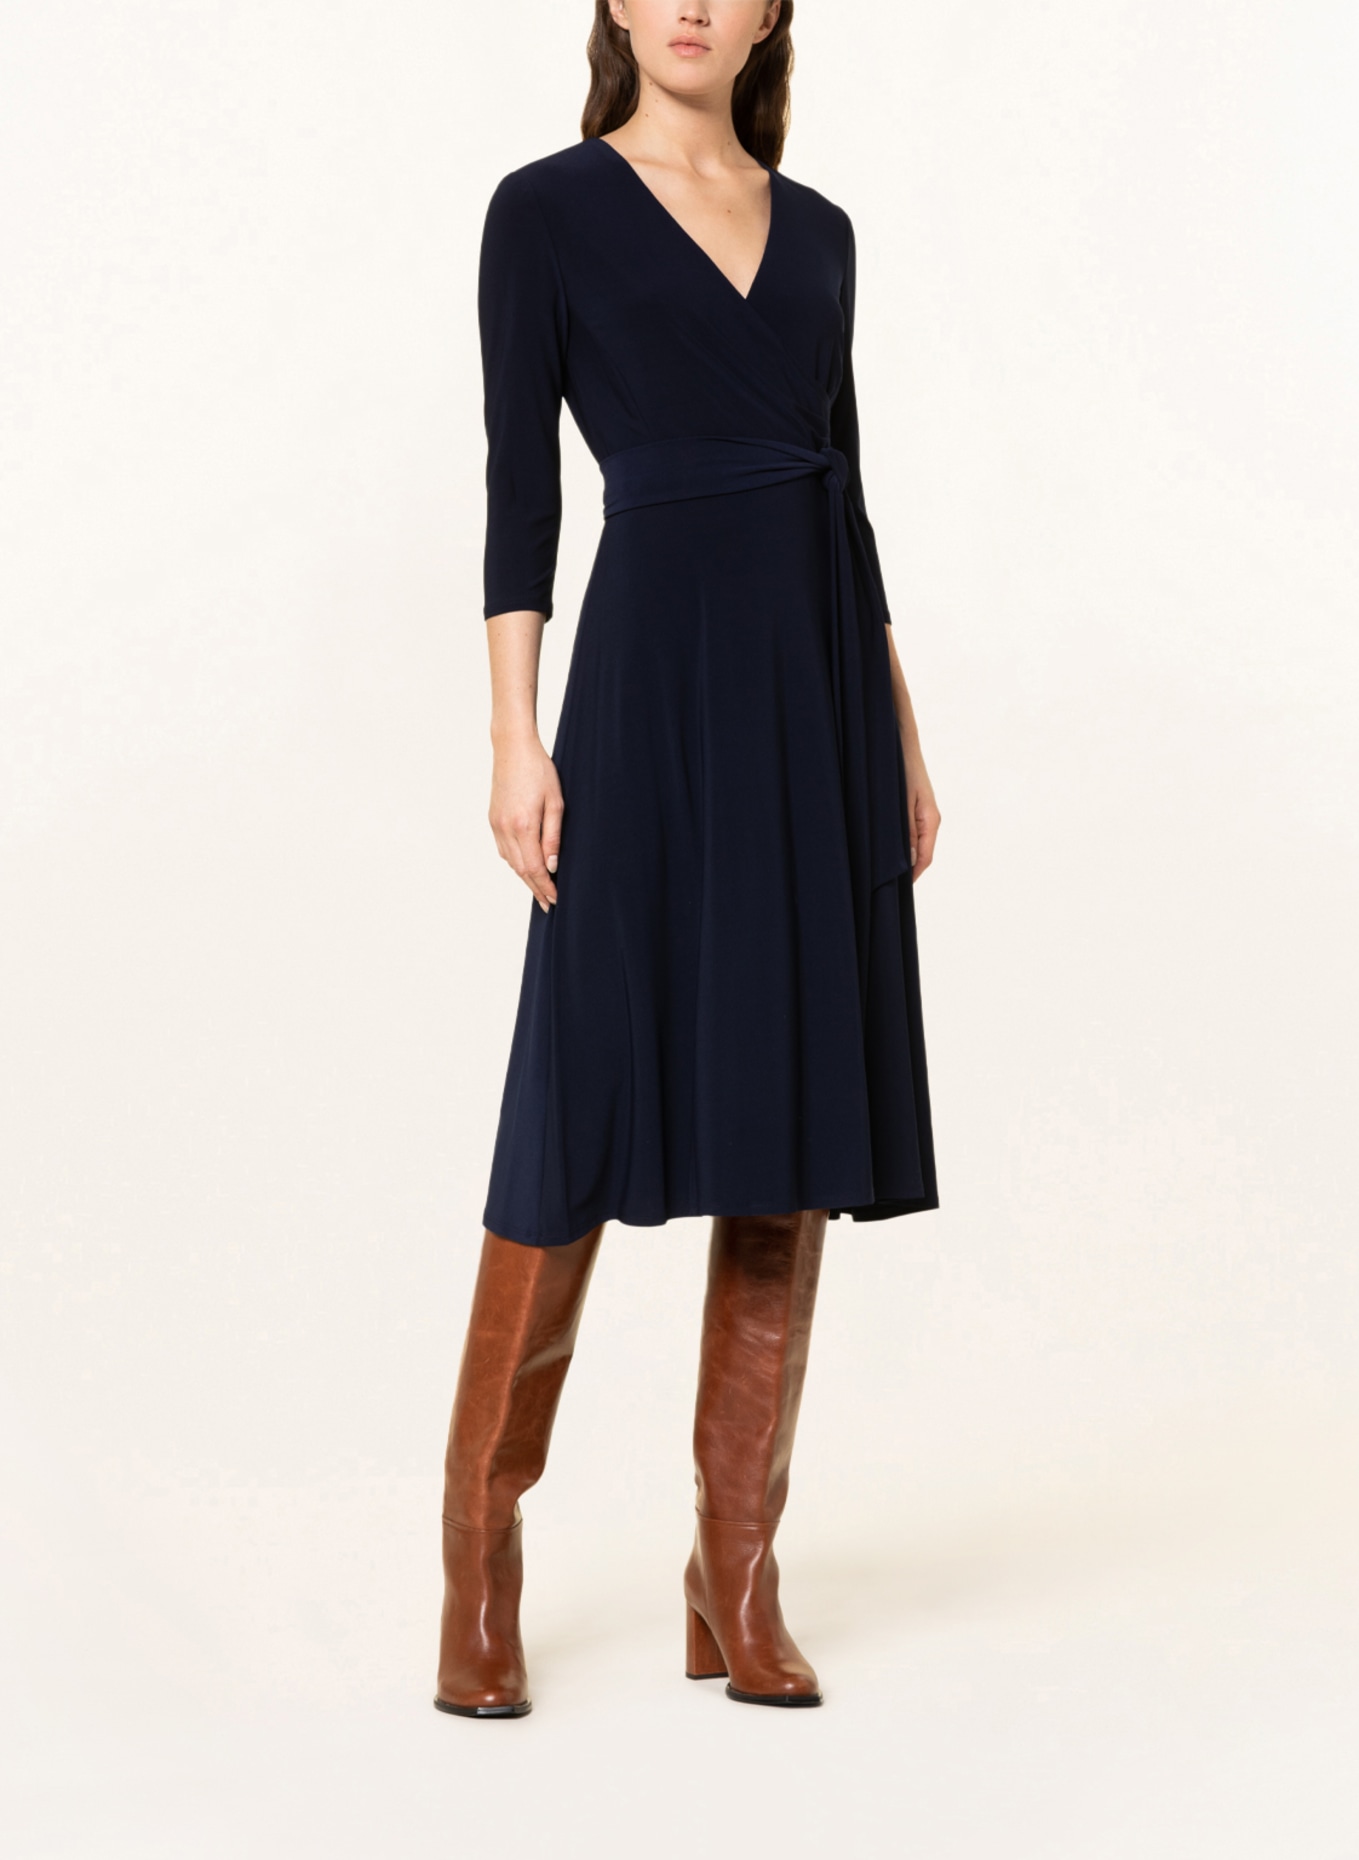 LAUREN RALPH LAUREN Dress with 3/4 sleeves, Color: DARK BLUE (Image 2)